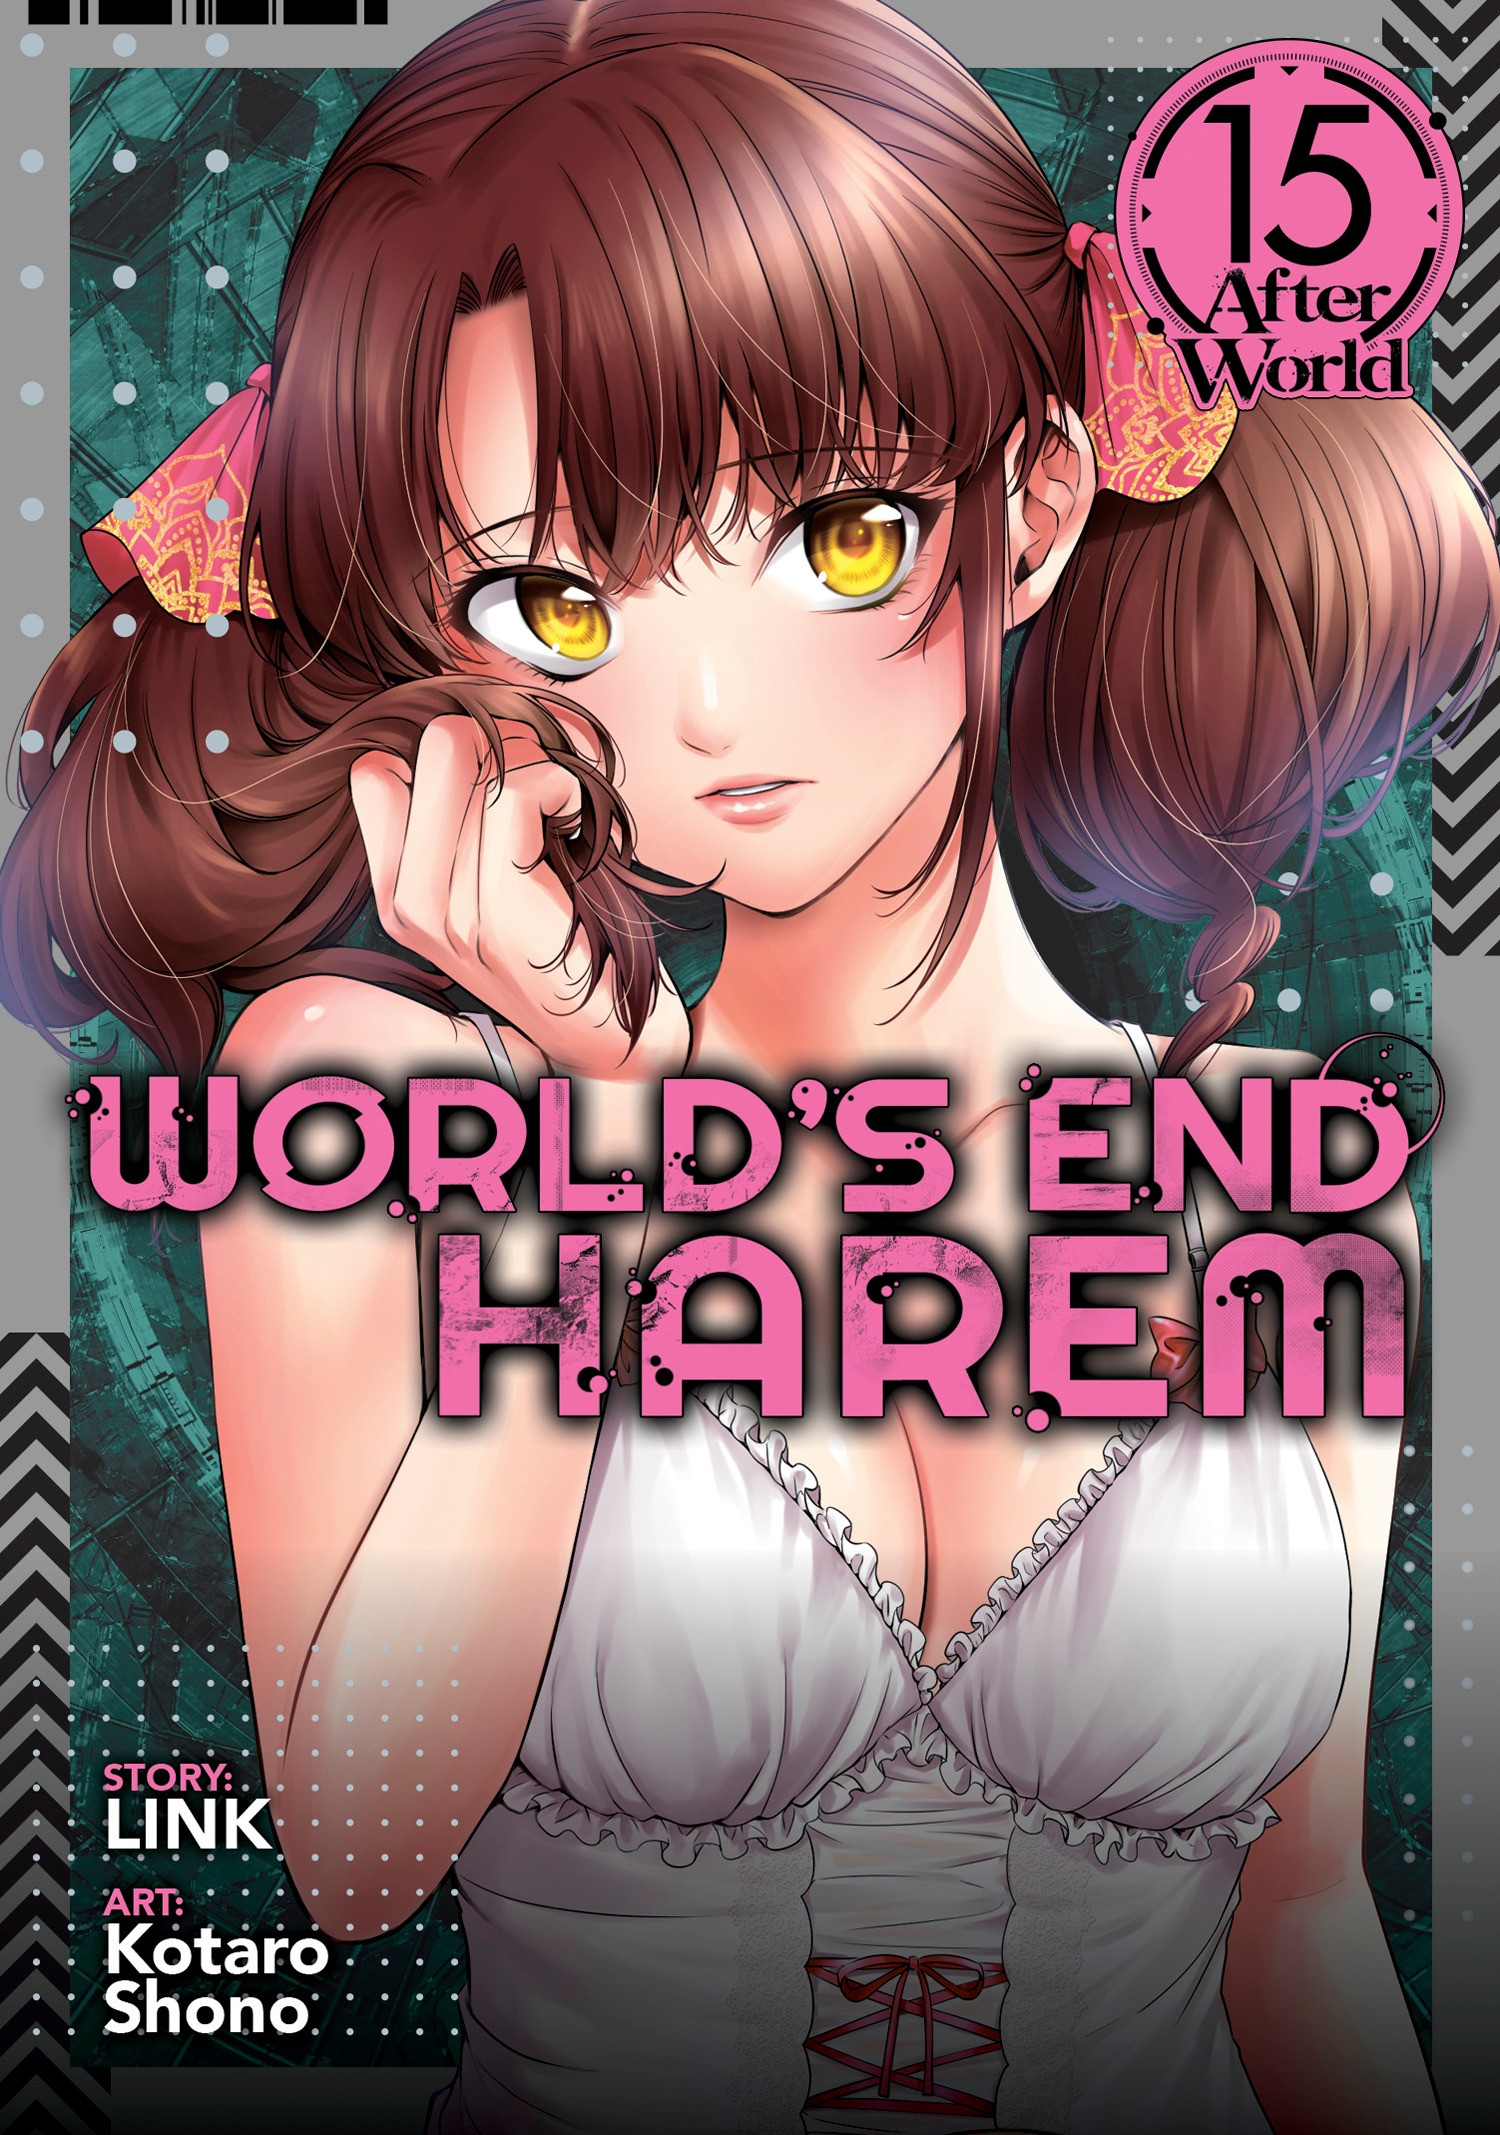 World's End Harem (Shuumatsu no Harem): Fantasia 12 – Japanese